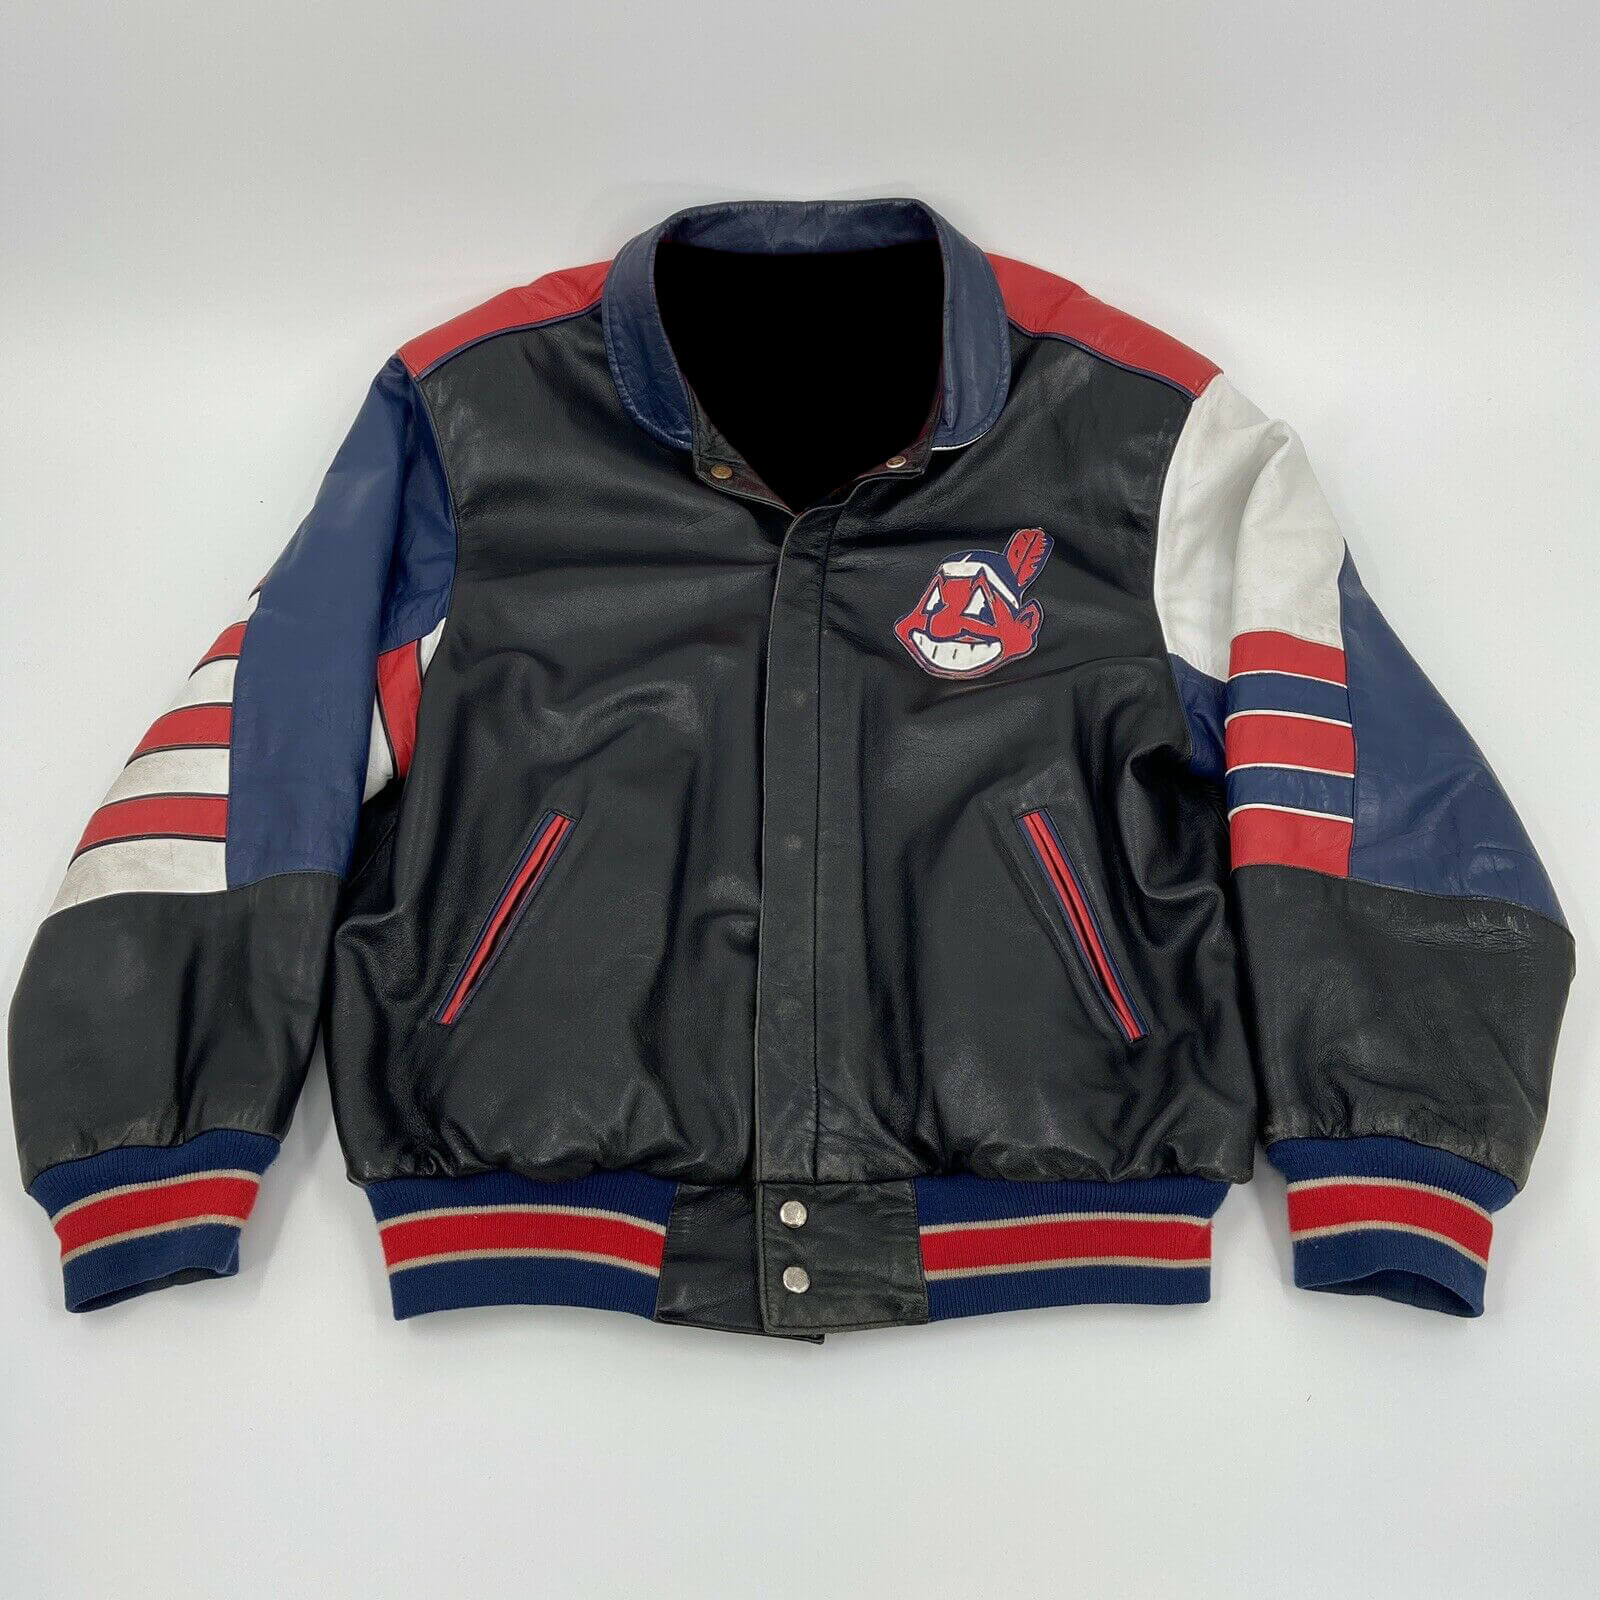 Vintage Jeff Hamilton Cleveland Indians Leather Jacket